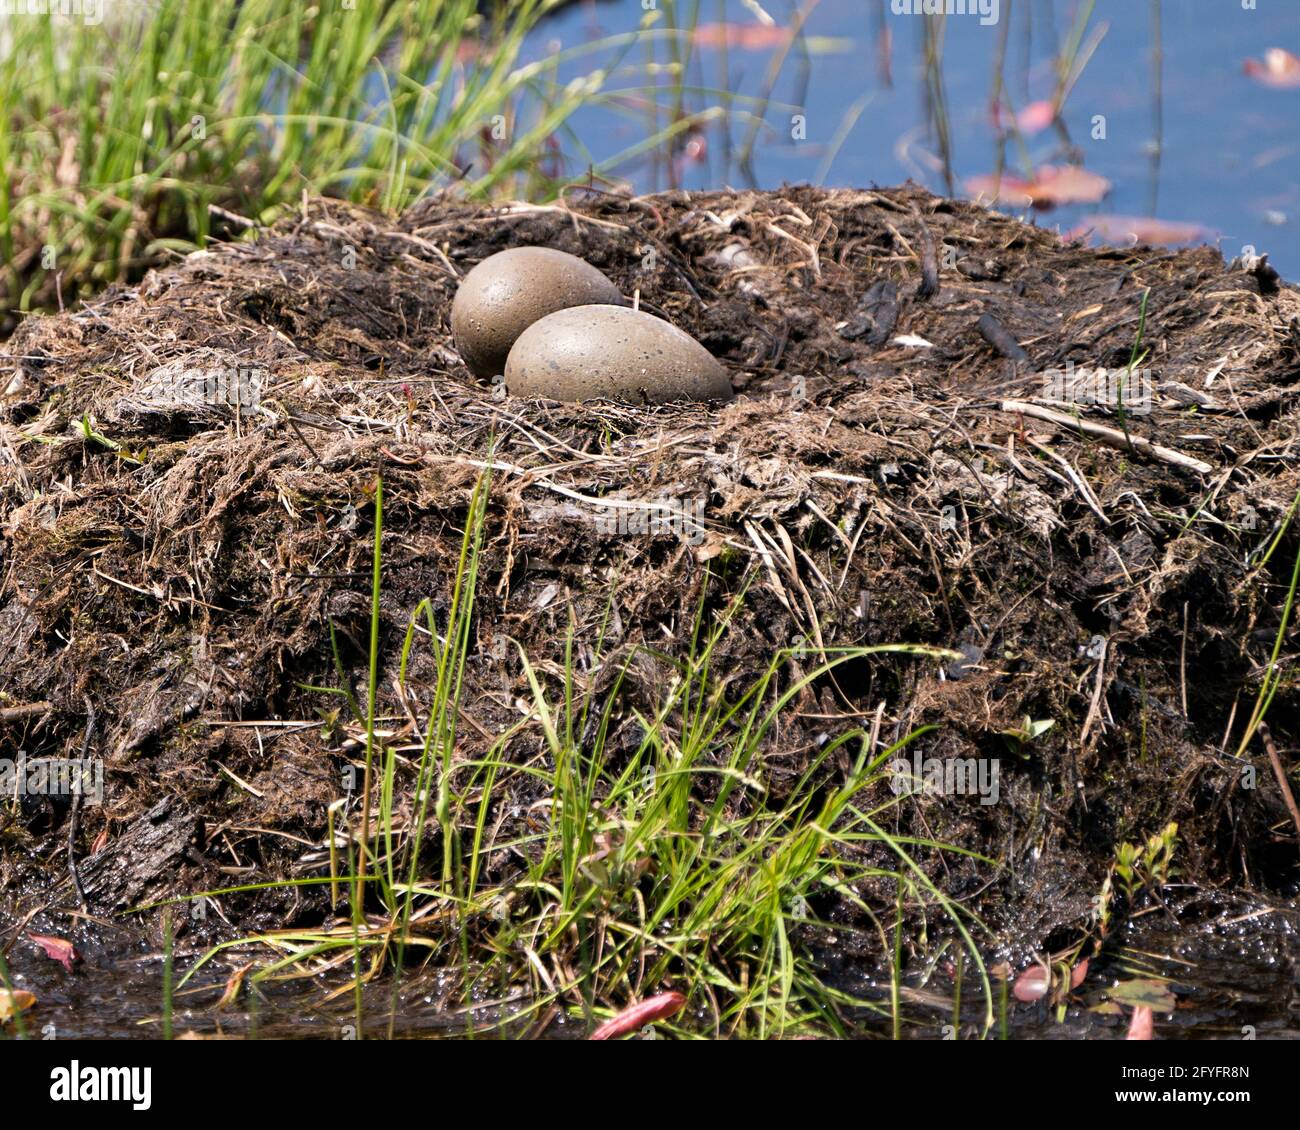 Gemeinsame Looneier und Nestbau mit Sumpfgräsern und Schlamm an der Seite des Sees in ihrer Umgebung und ihrem Lebensraum in einer magischen Zeit. Bild. Stockfoto